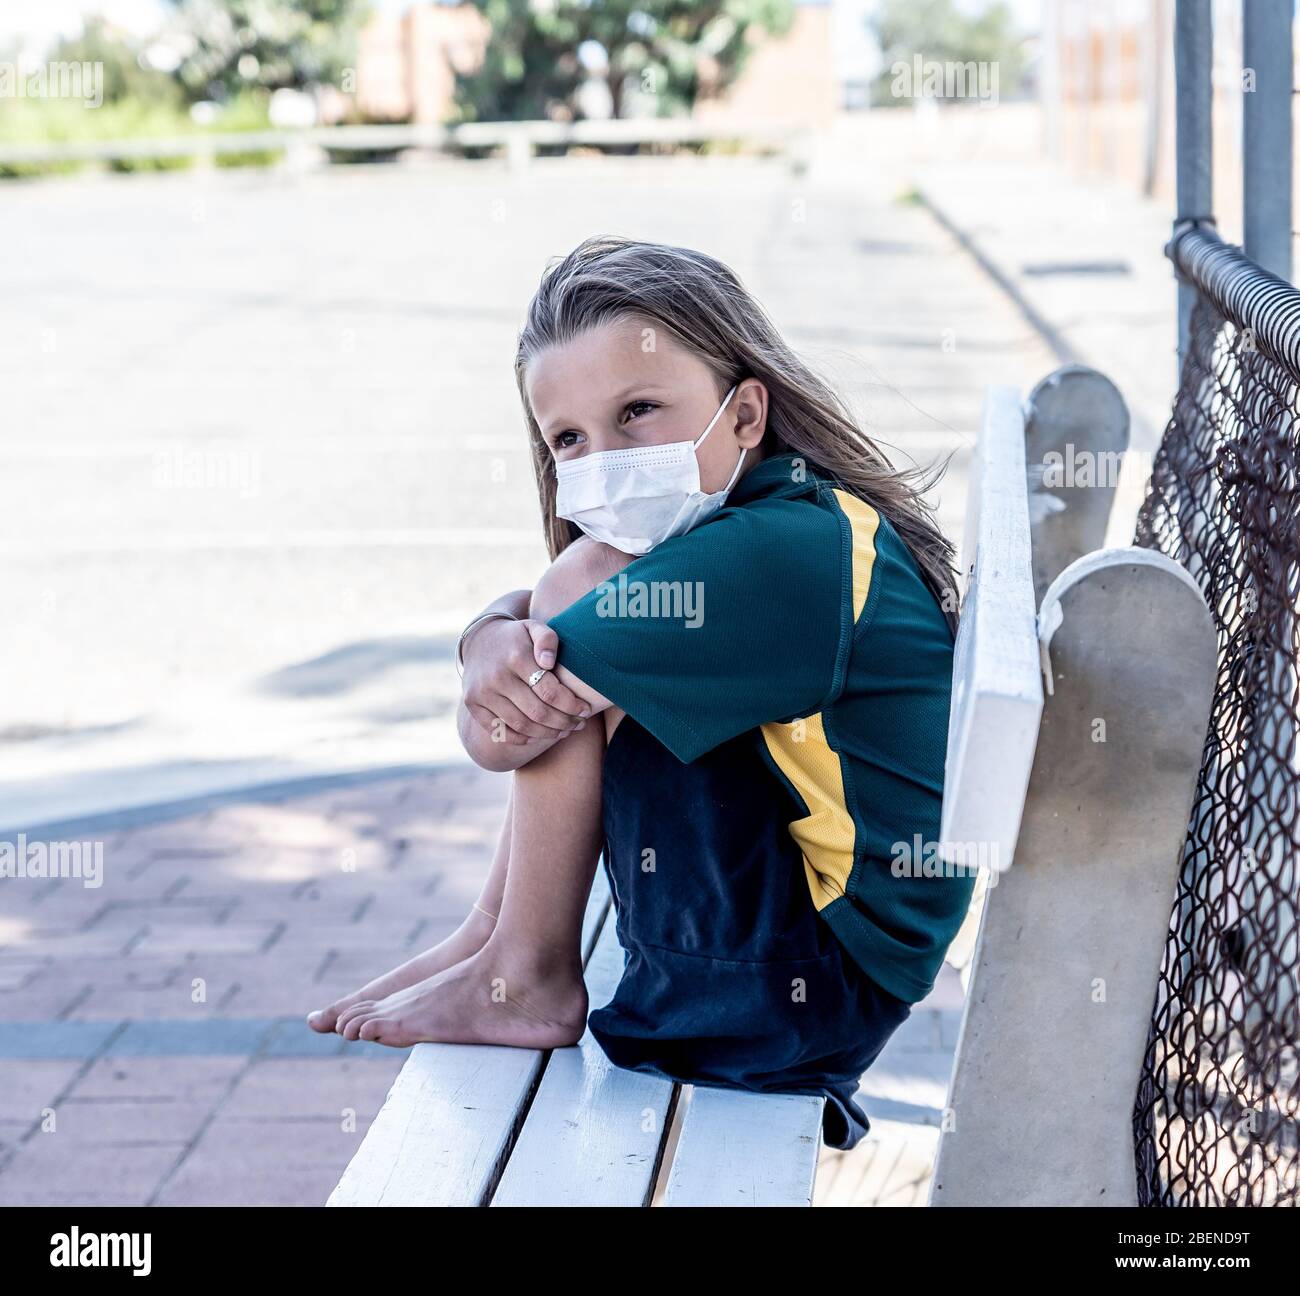 Covid-19 Ausbruchschulen geschlossen. Trauriges und gelangweiltes Schulmädchen Kind mit Gesichtsmaske, das sich depressiv und einsam vor ihrer geschlossenen Schule fühlt. Einschränkungen a Stockfoto